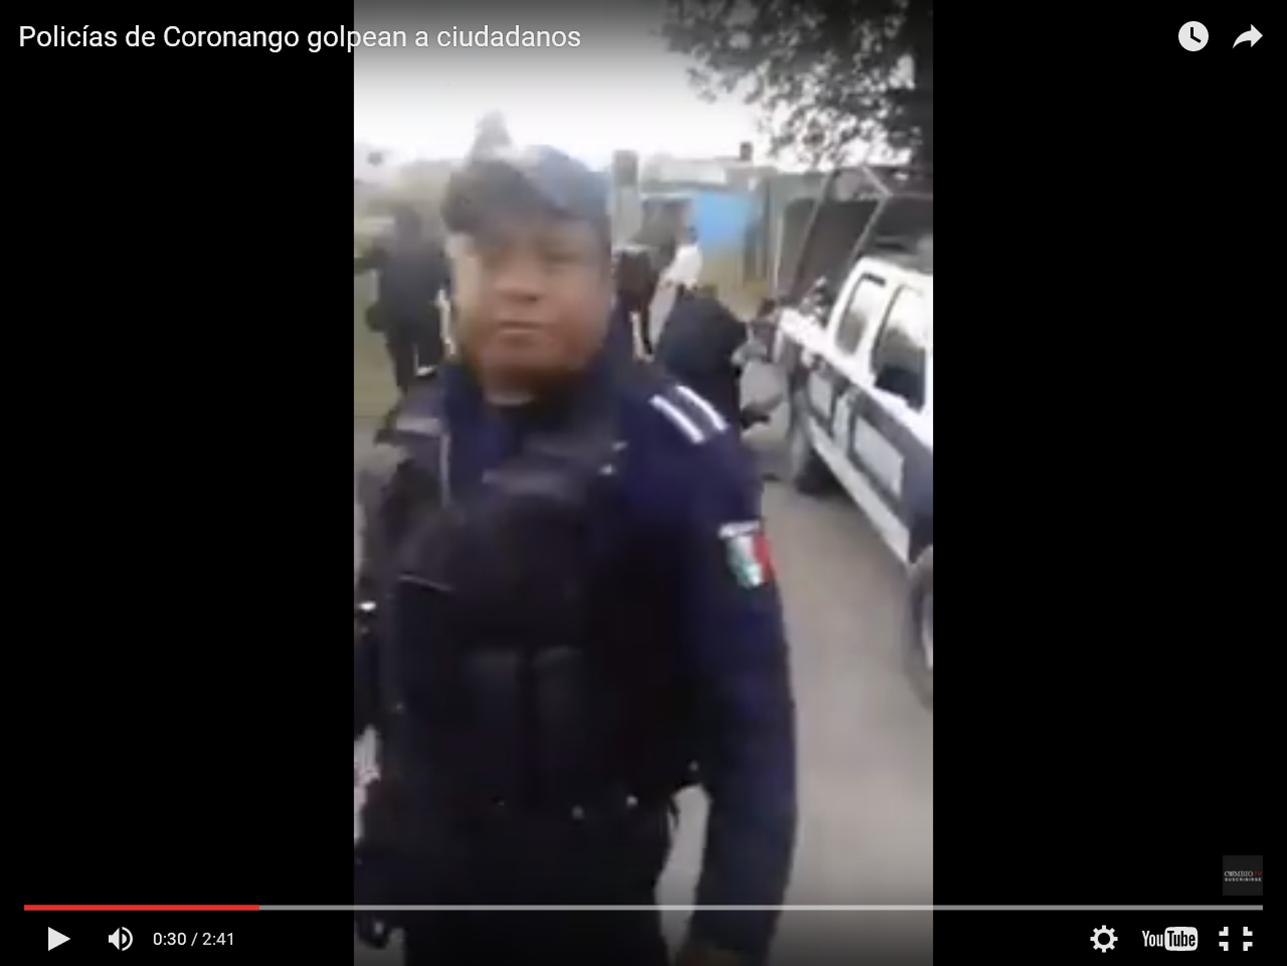 VIDEO: POLICIAS DE CORONANGO GOLPEAN A CIUDADANOS